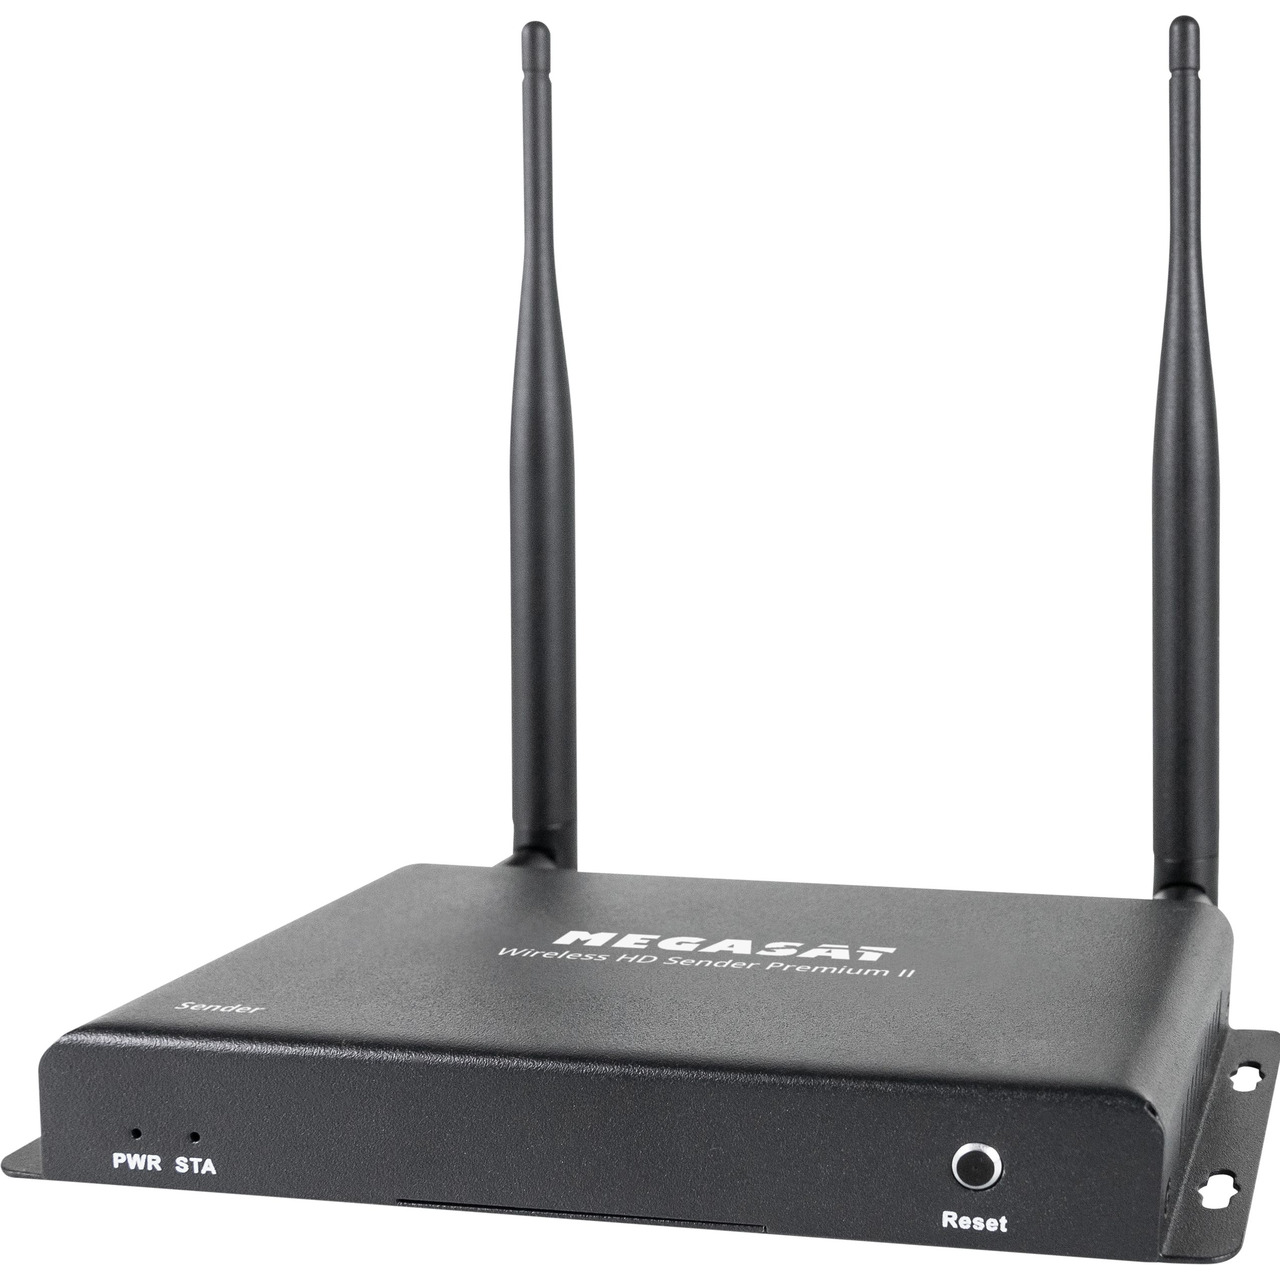 Megasat HDMI-Funkübertragungssystem Wireless HD Sender Premium II- 5-8 GHz- bis zu 200 m Reichweite